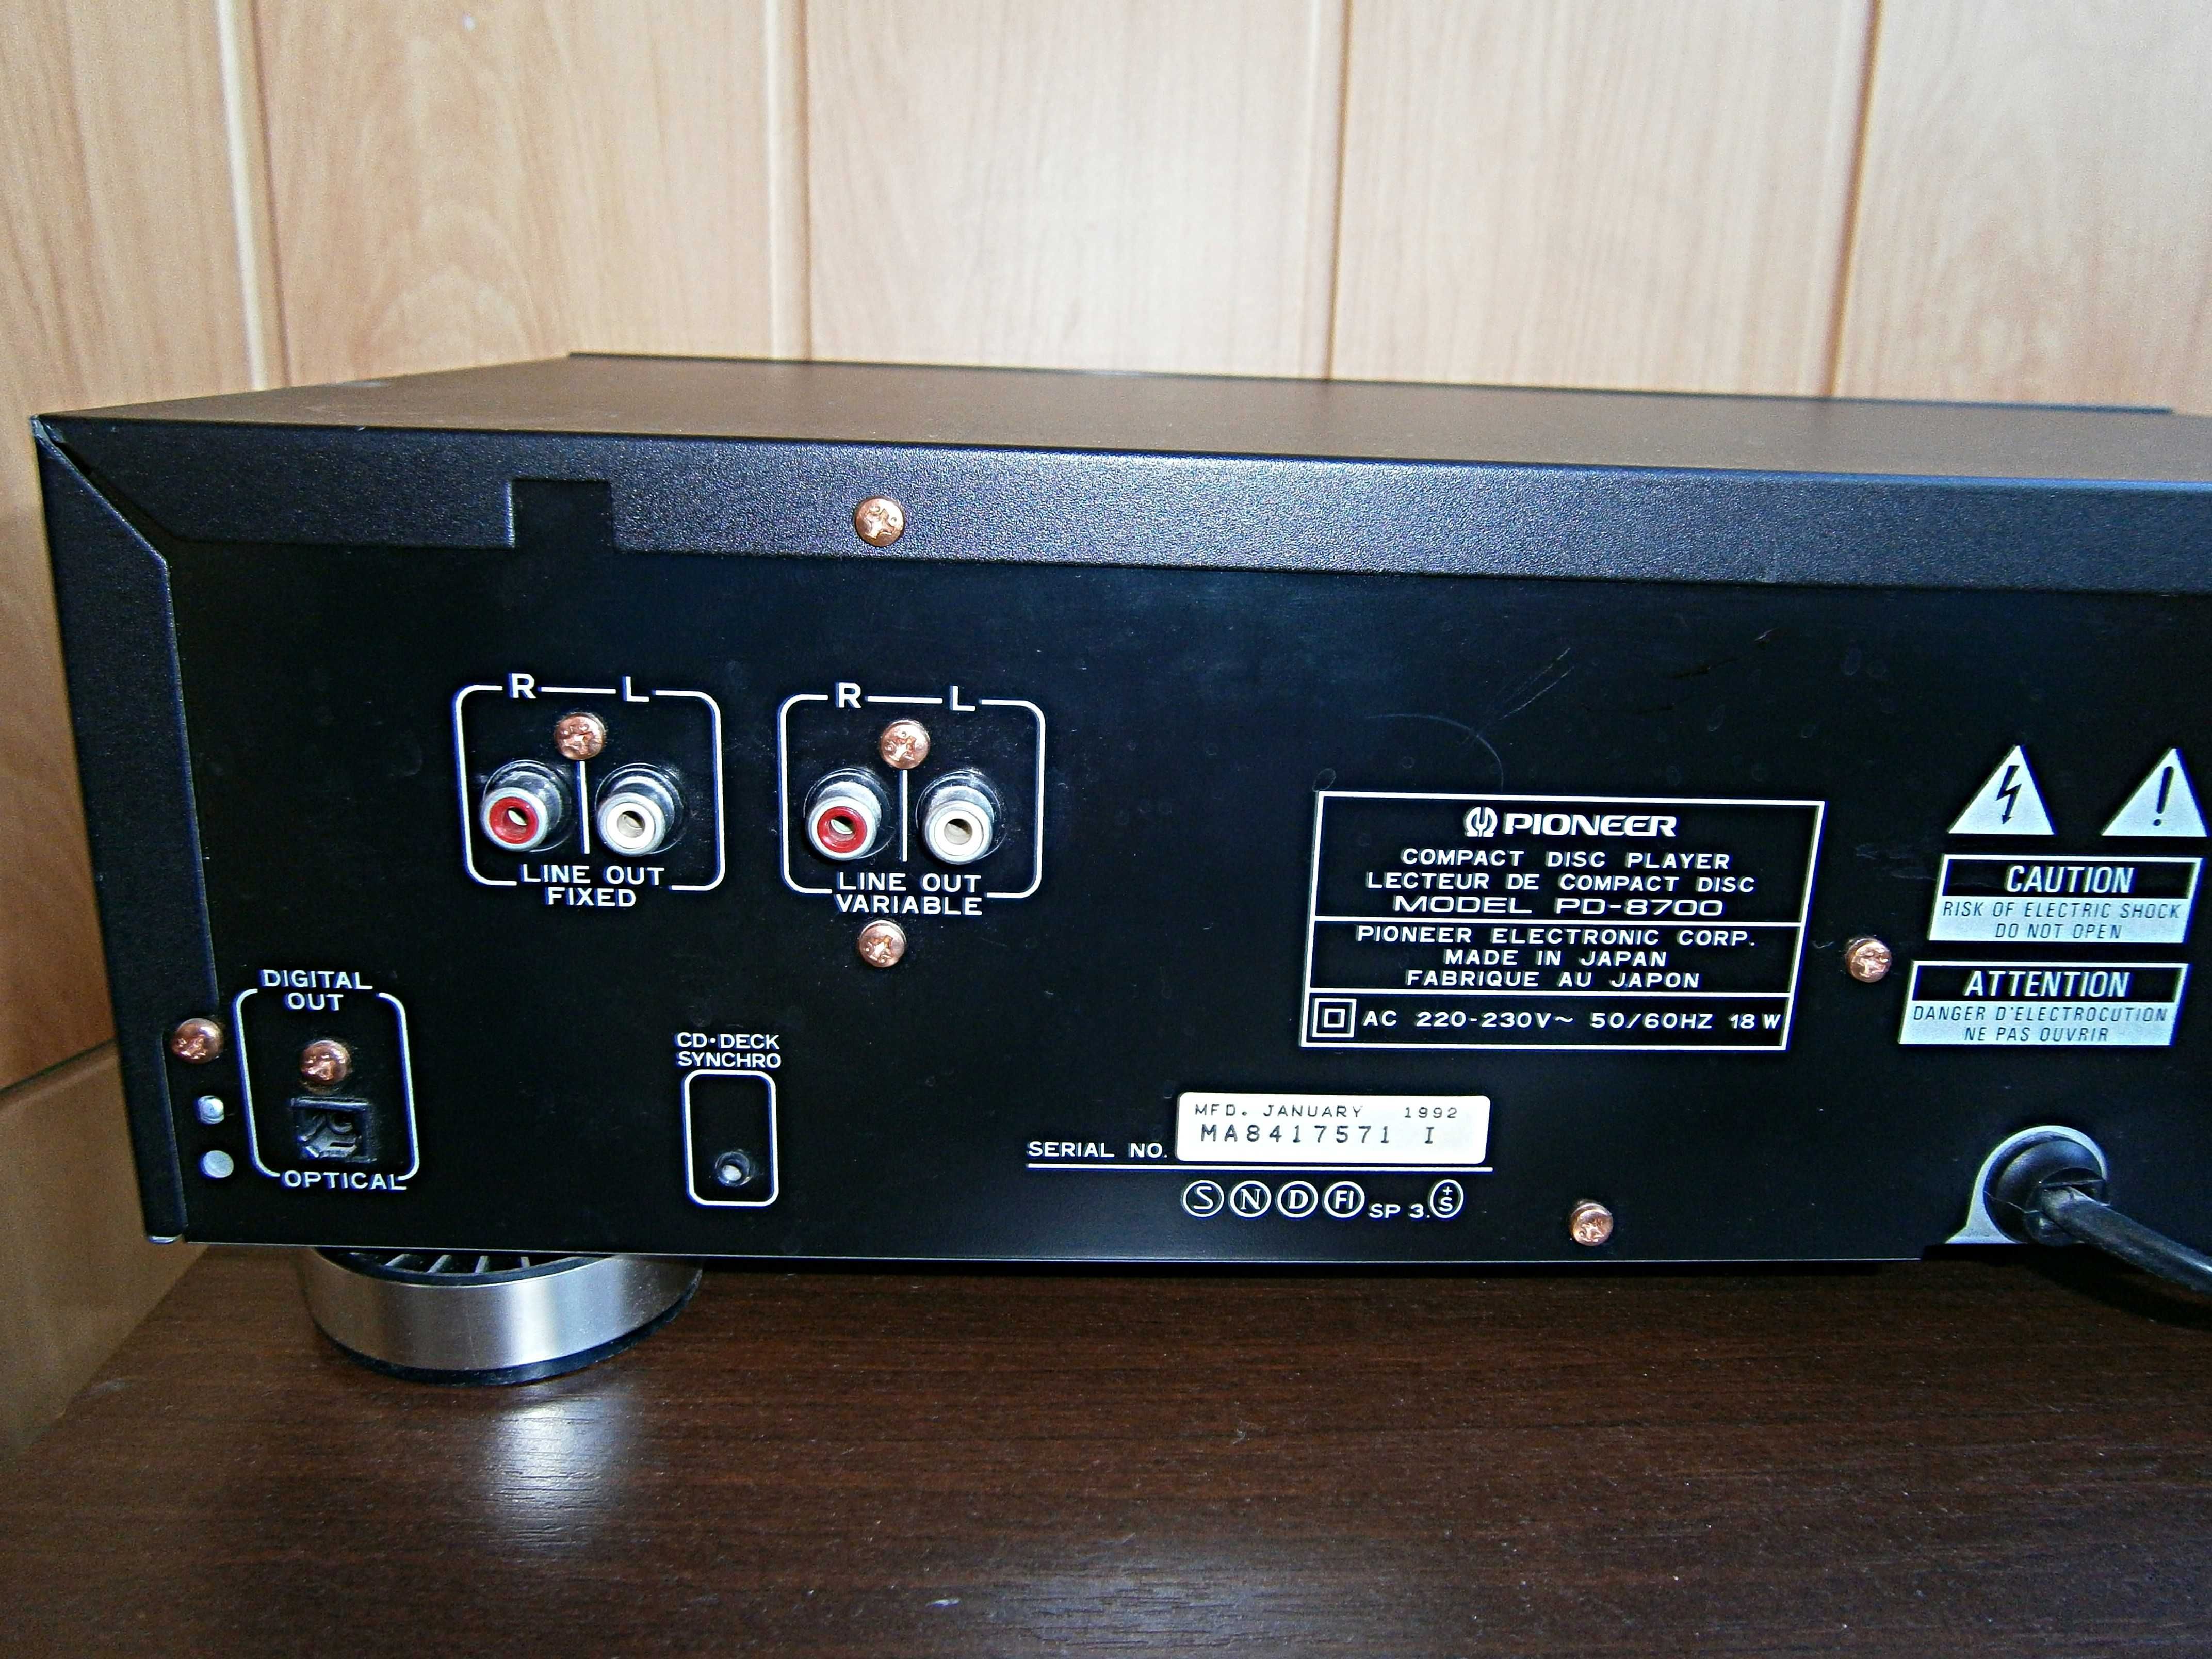 CD- проигрователь PIONEER PD- 8700 в отличном состоянии. Made in Japan